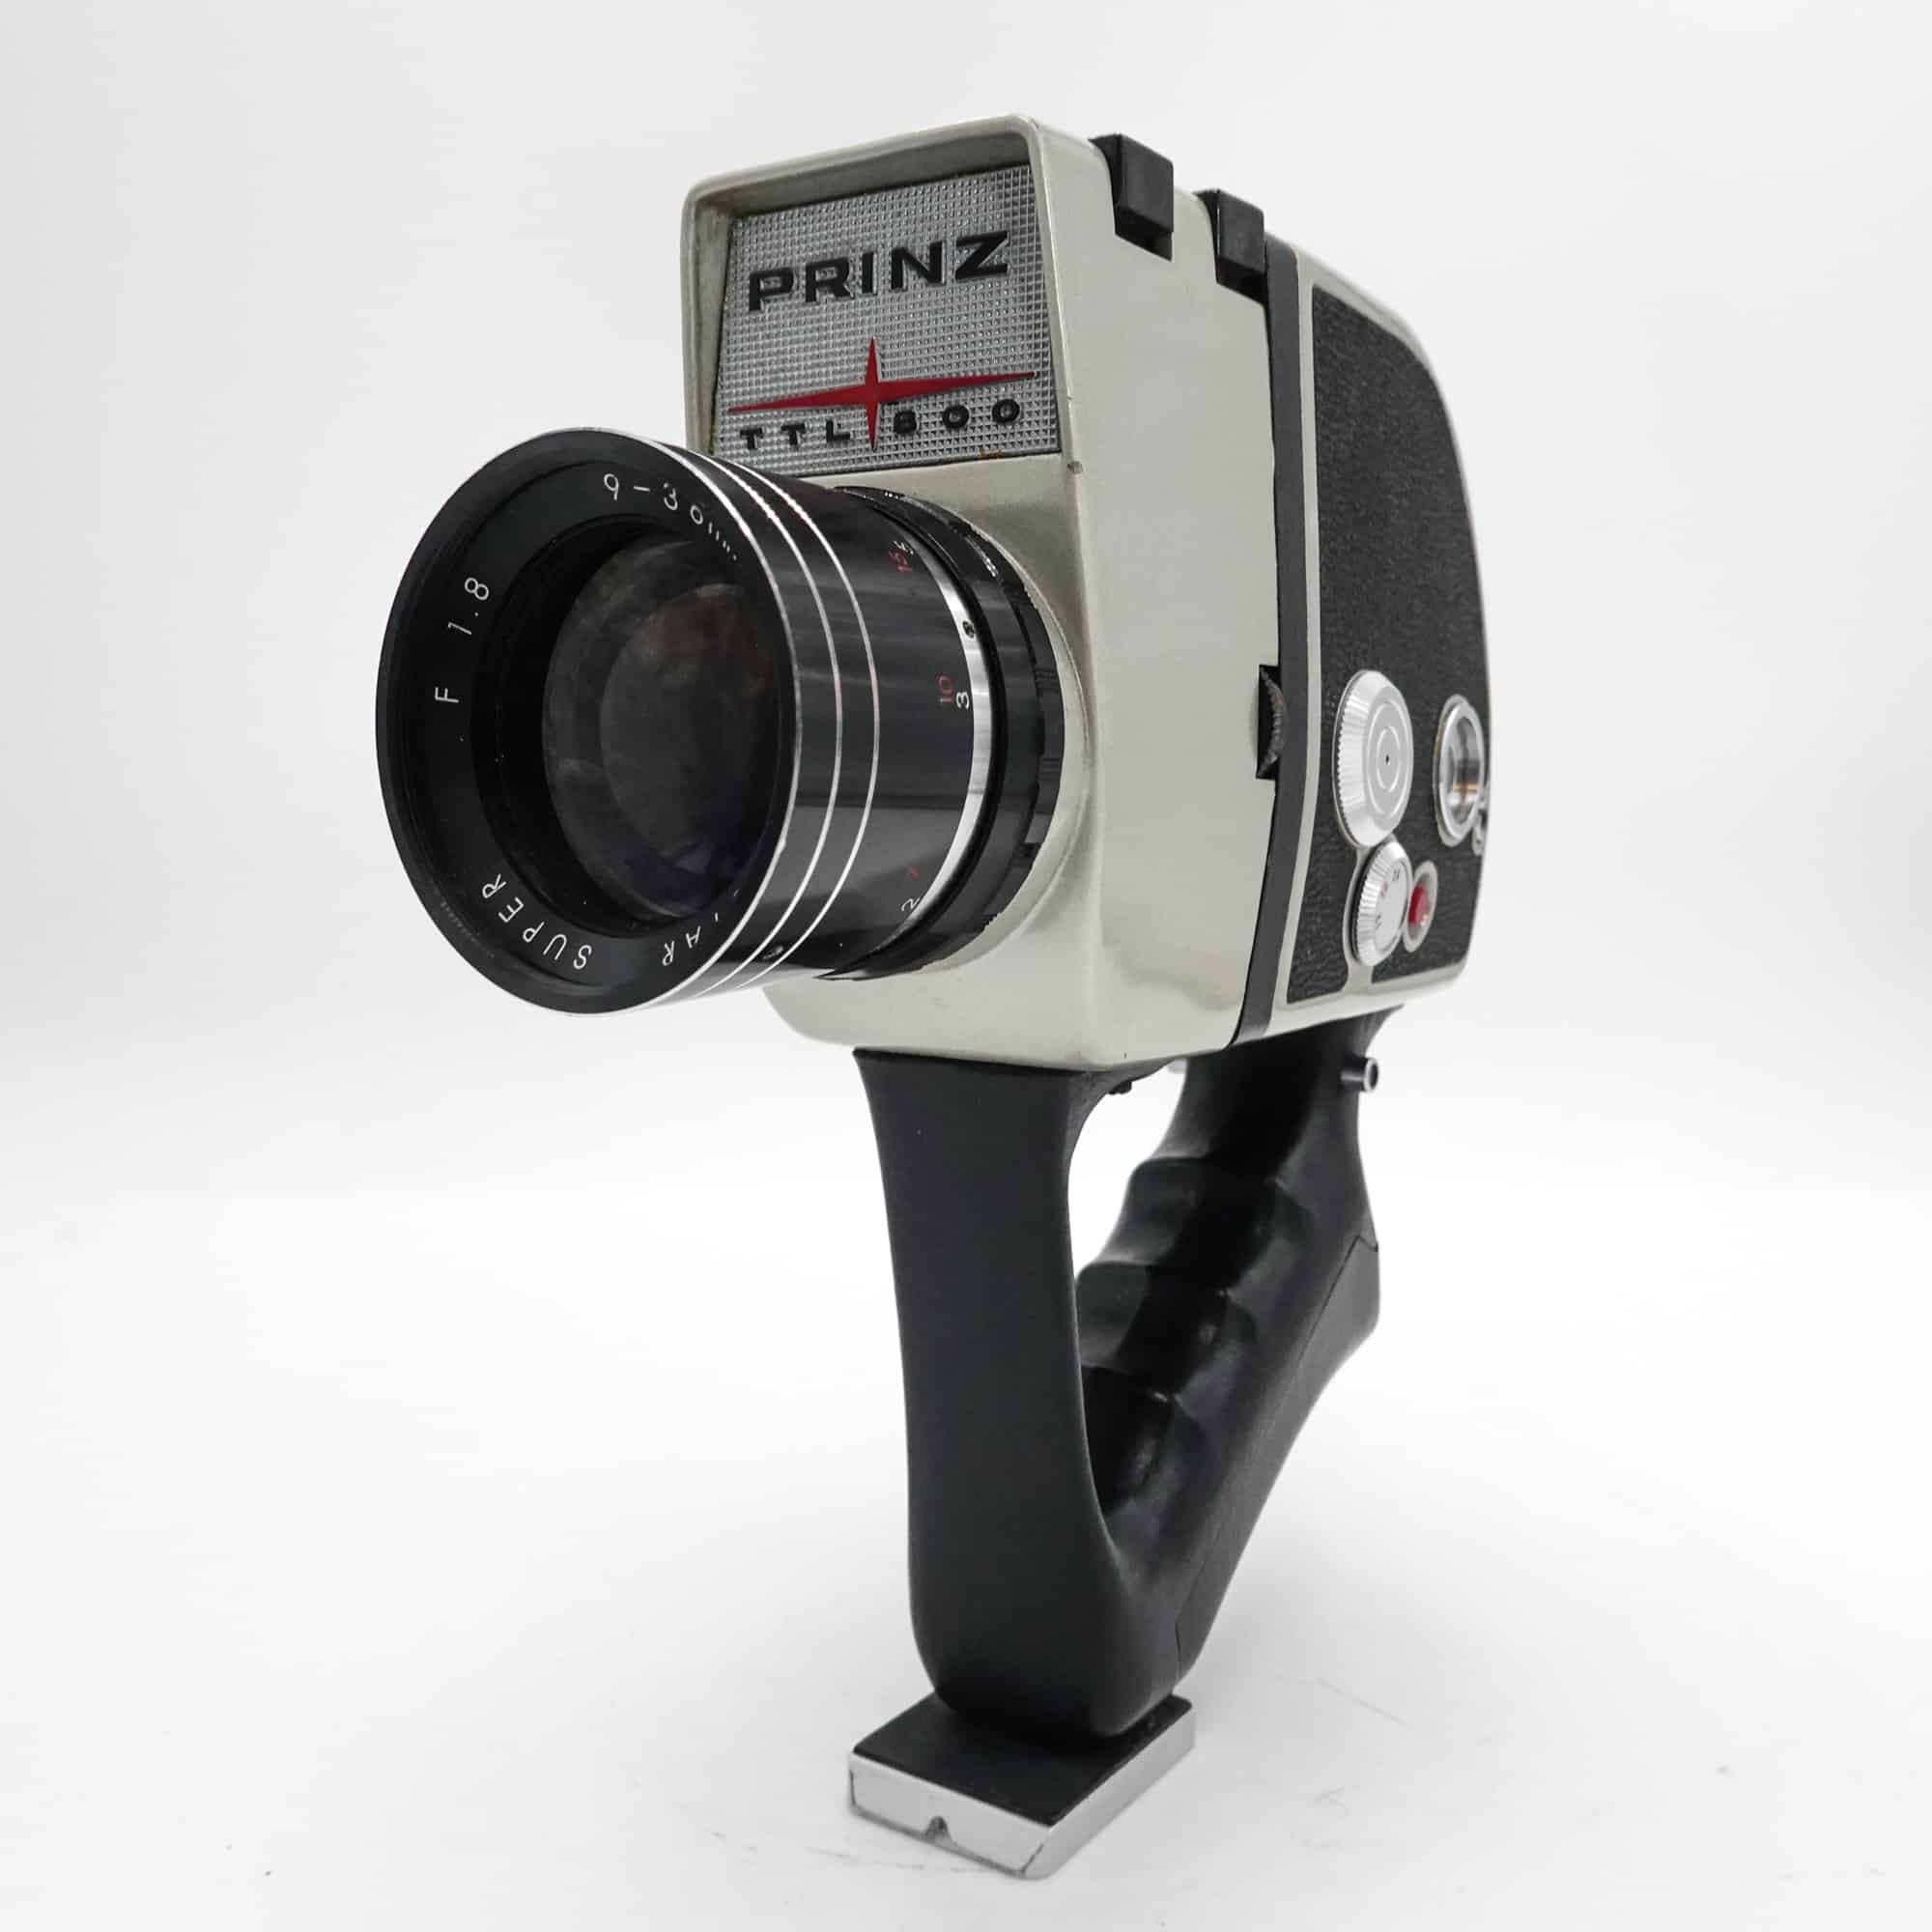 Prinz TTL 800 Super 8 Camera